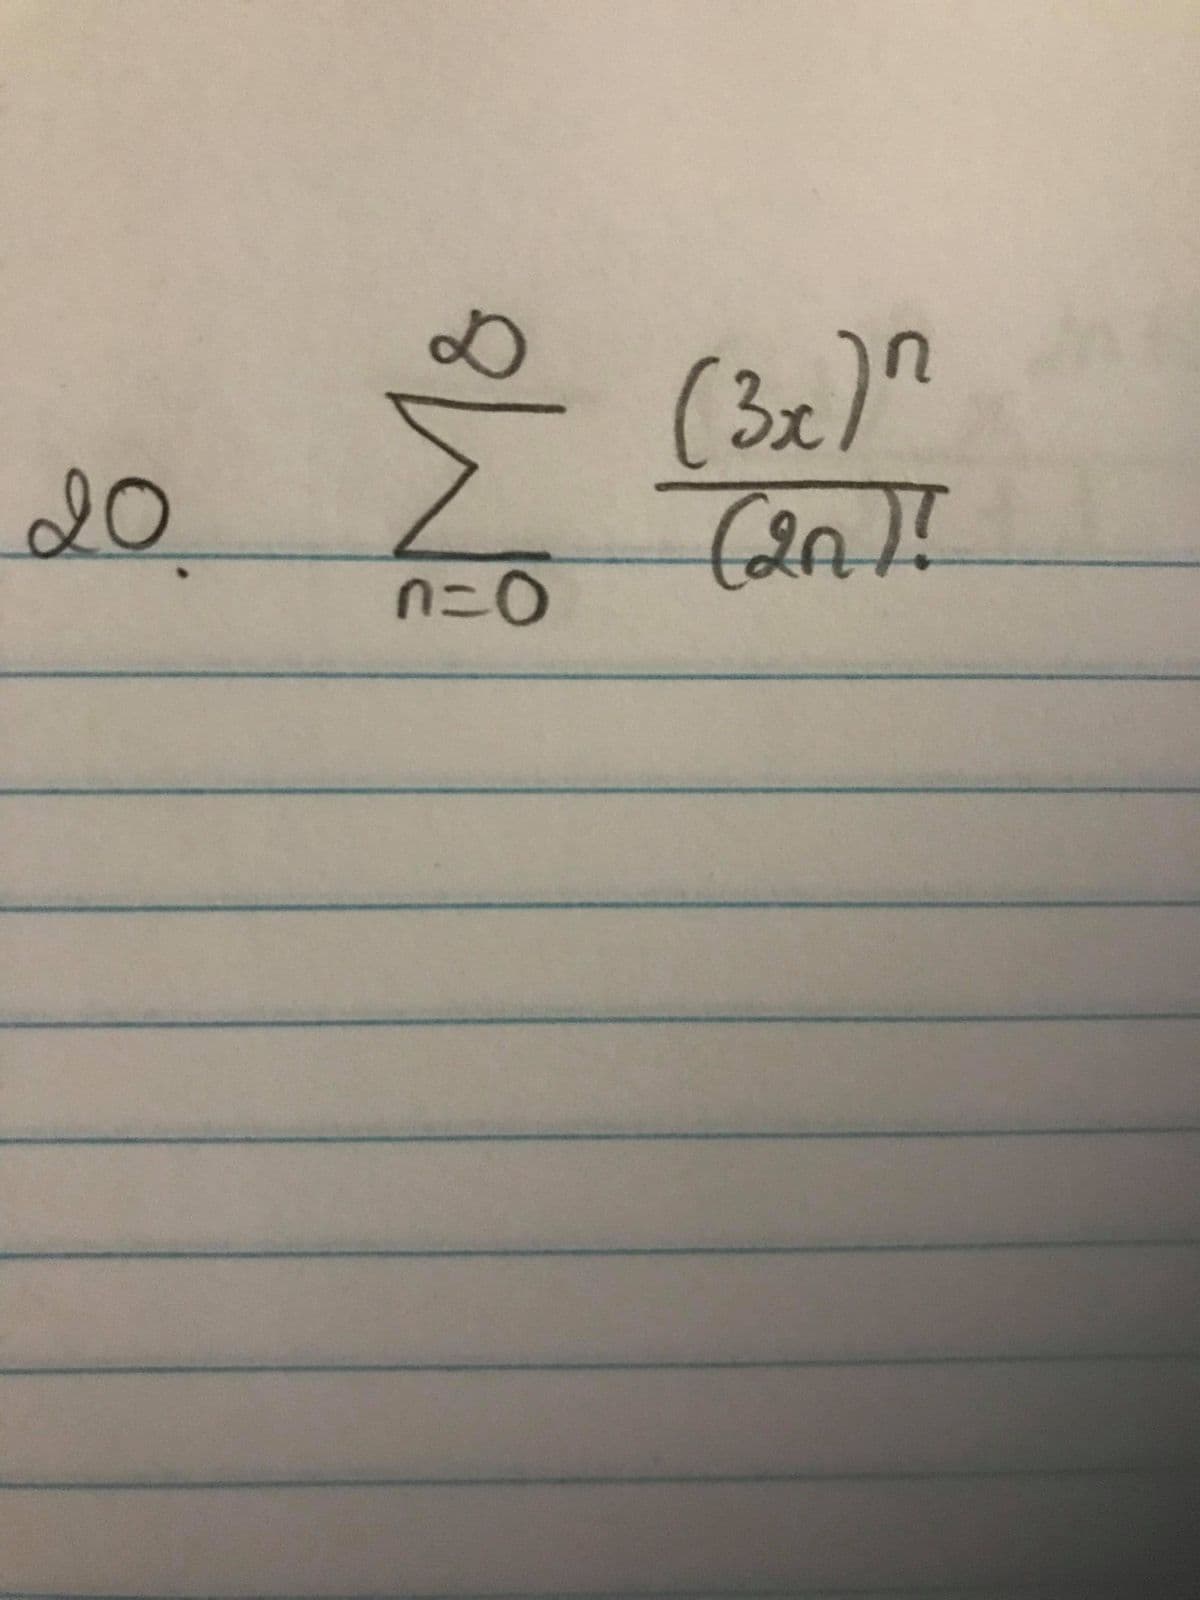 (3x)"
20
n=0
